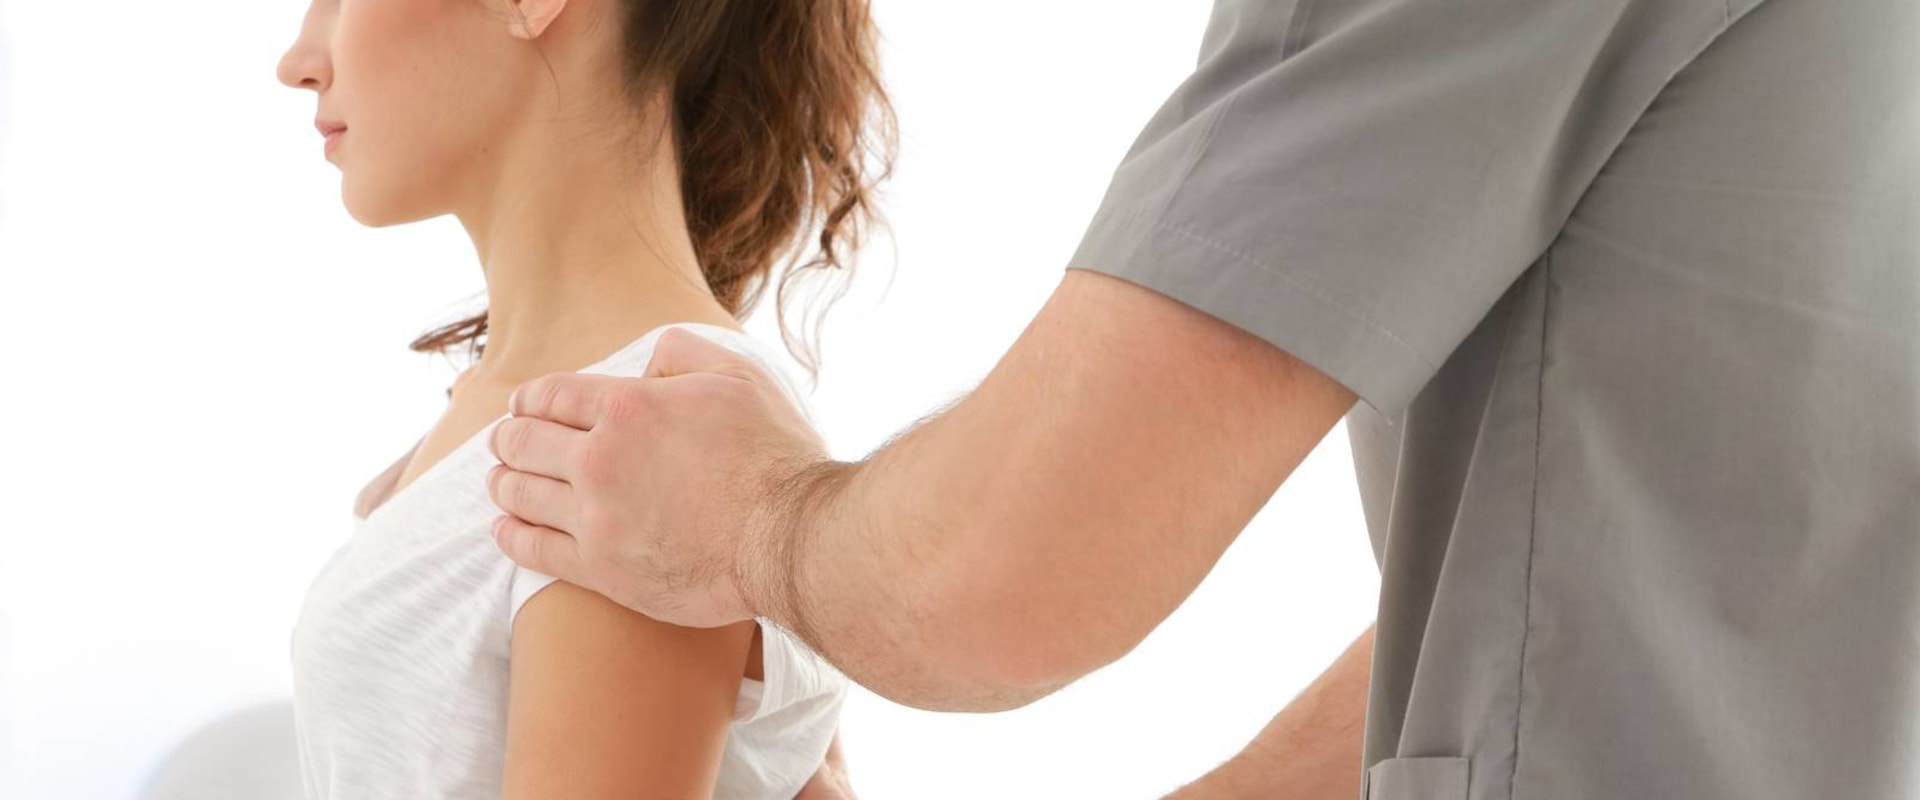 Do chiropractors ever injure patients?